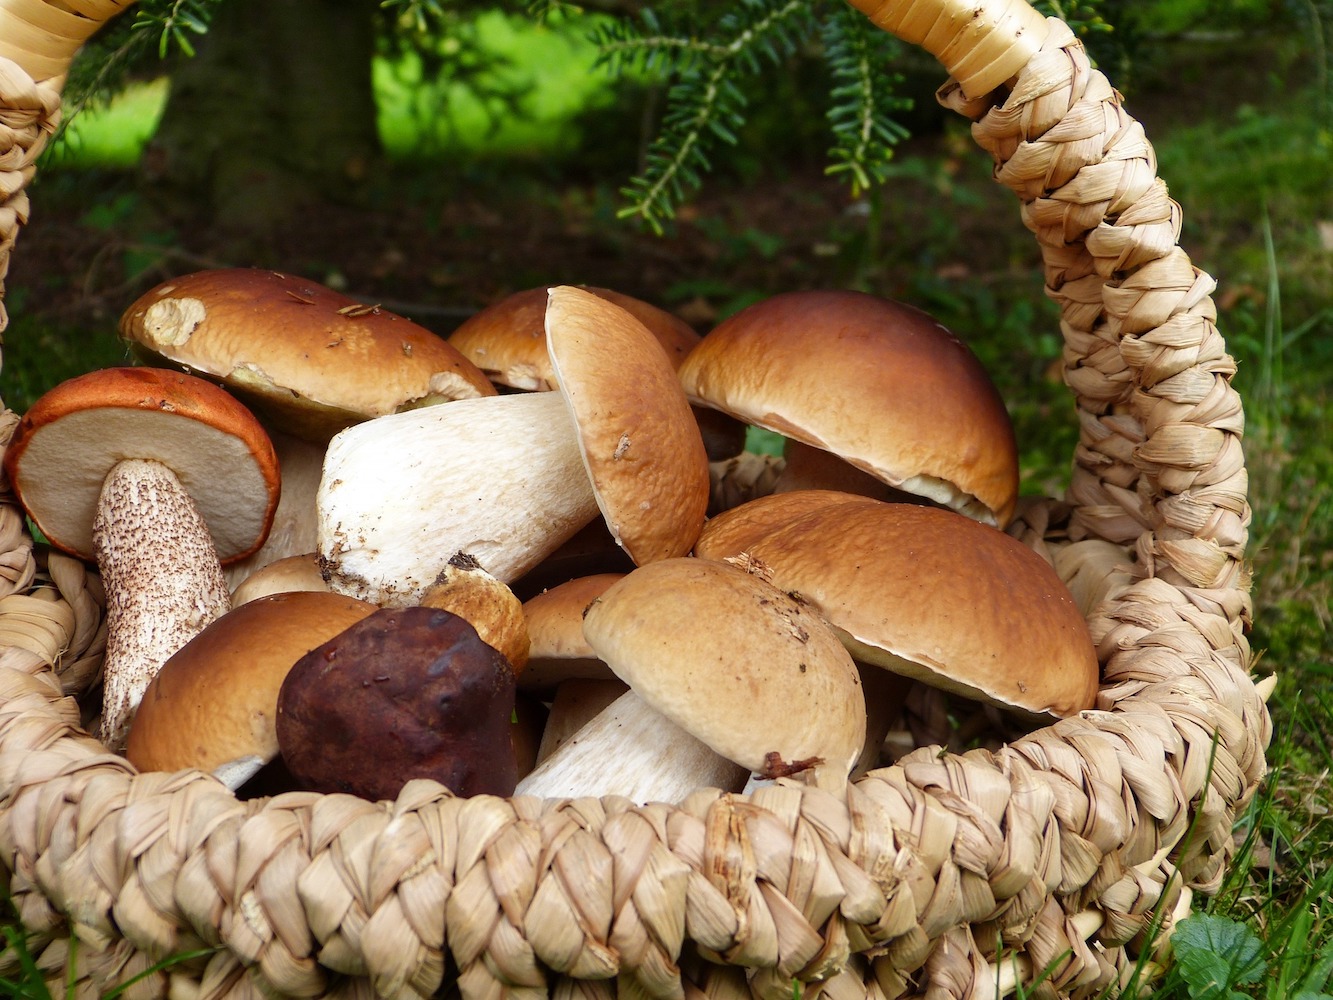 gathering fresh mushrooms